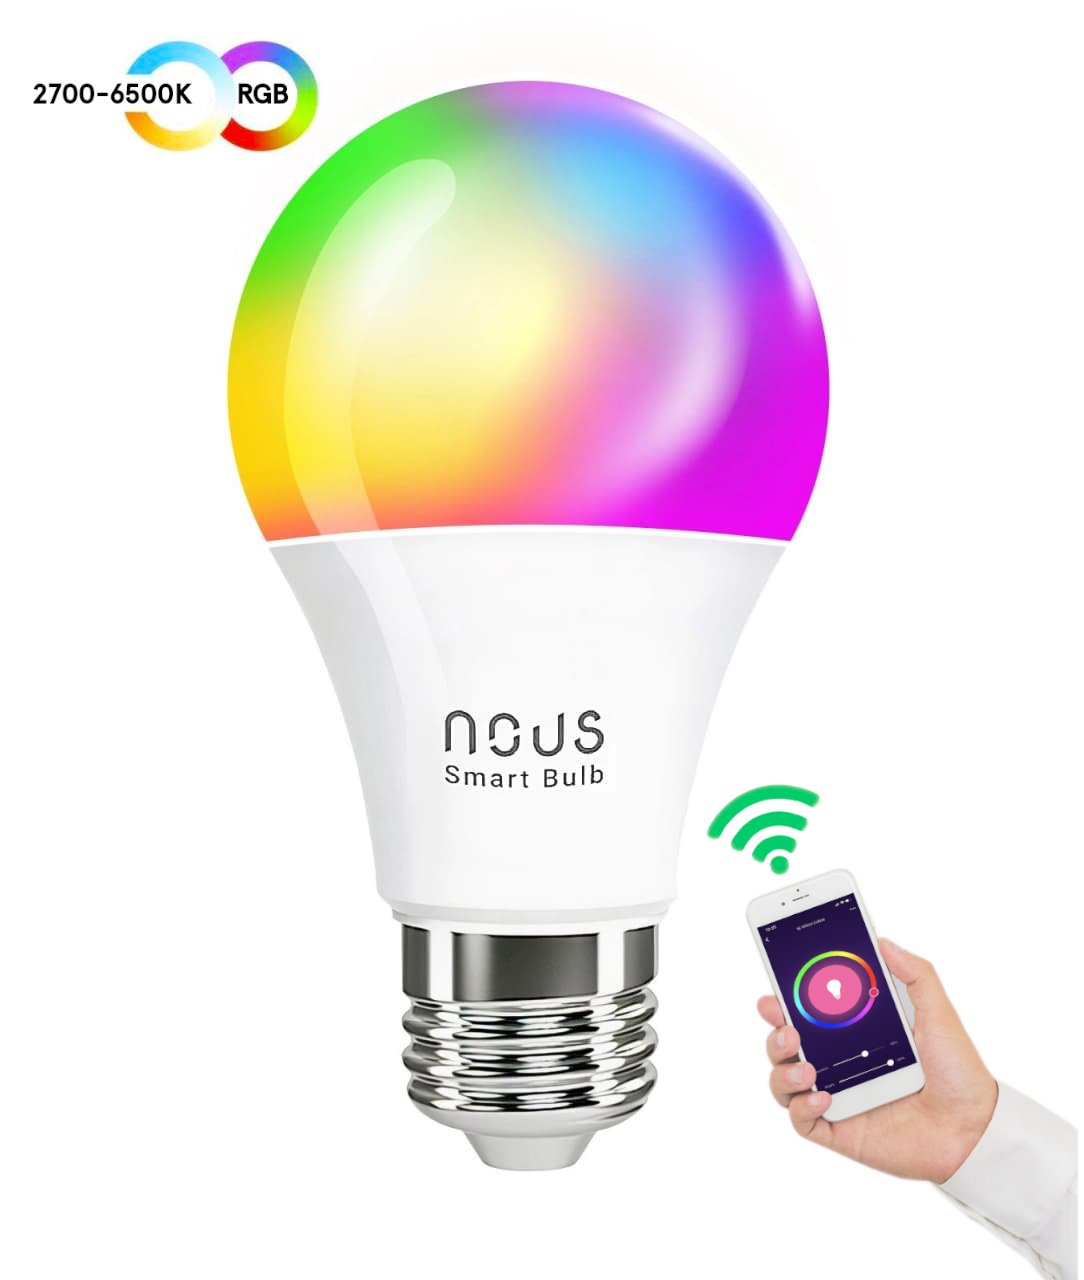 Set 2 becuri LED NOUS P3 RGB Smart, E27, Control din aplicatie